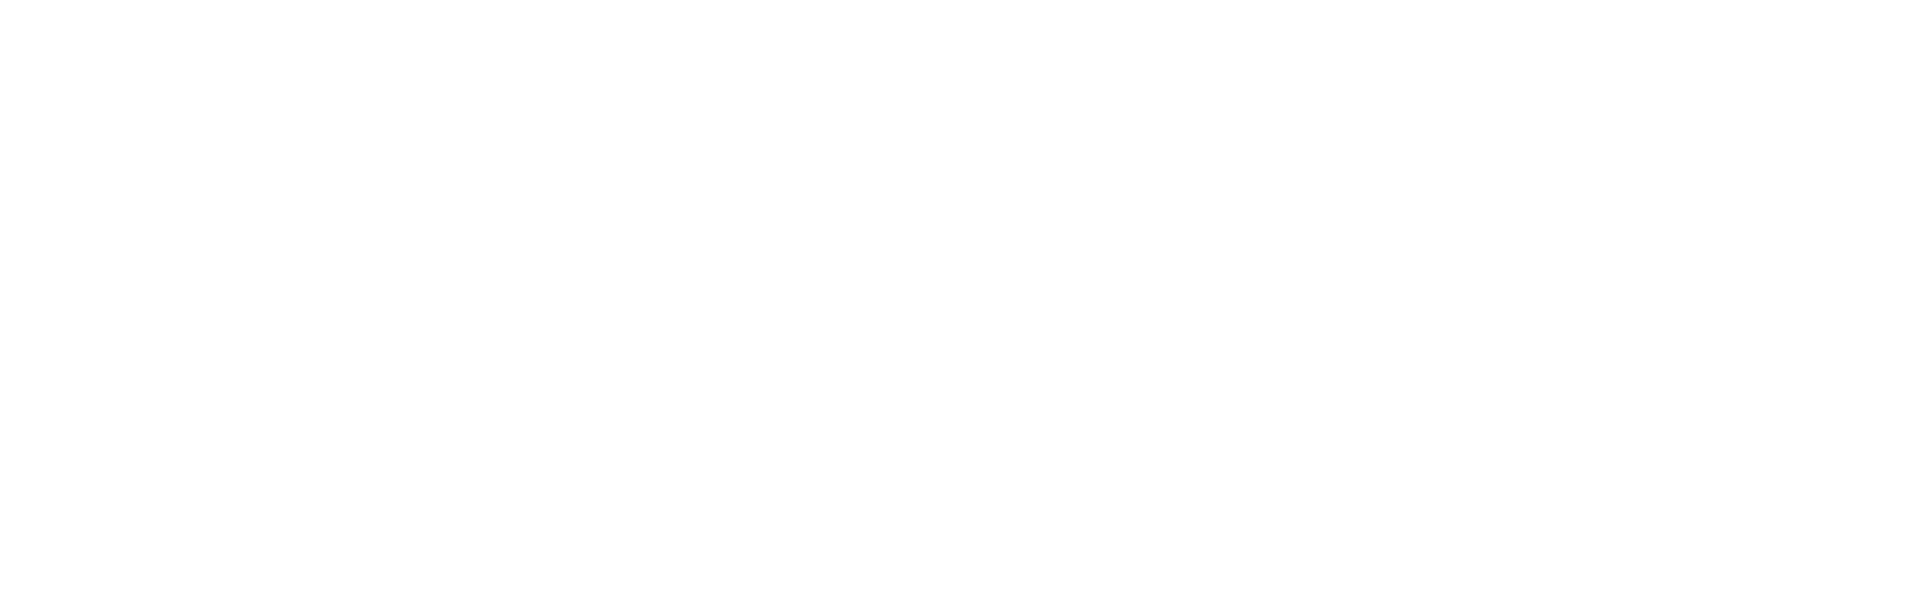 BUREAU 360 CONSULTANCY